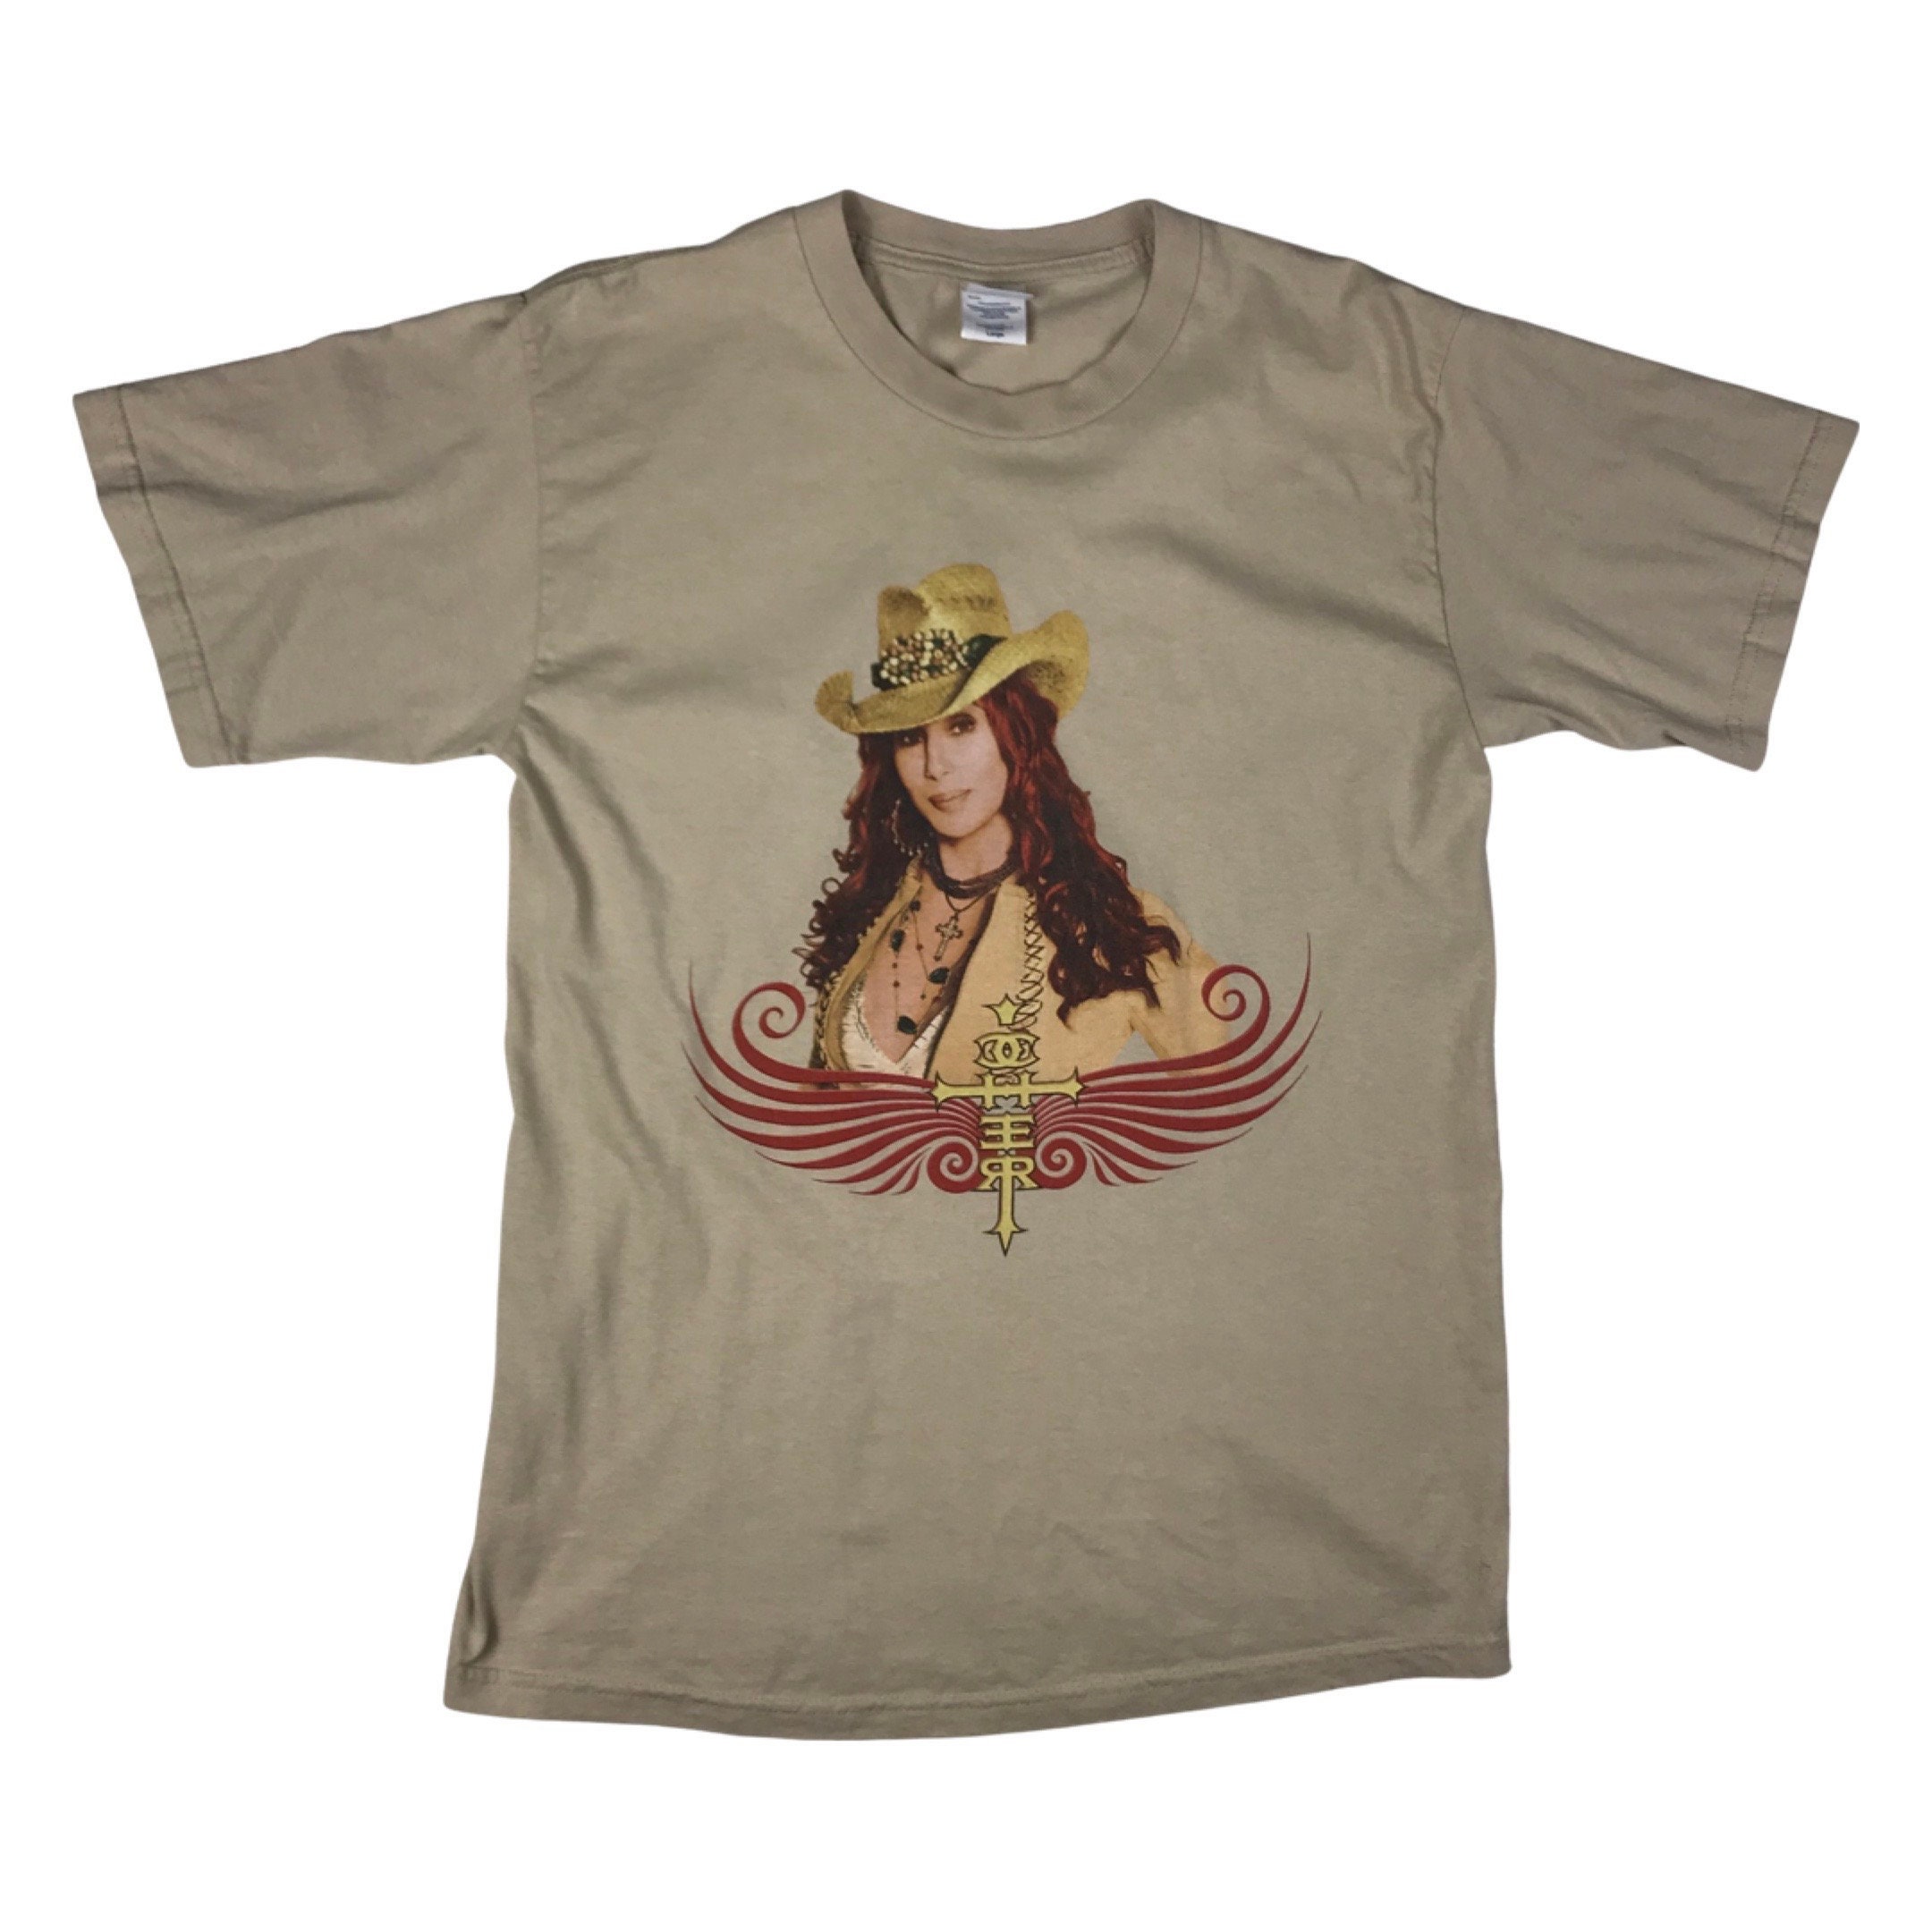 Vintage Cher Living Proof Tour 2003 Concert T-shirt Size L - Etsy